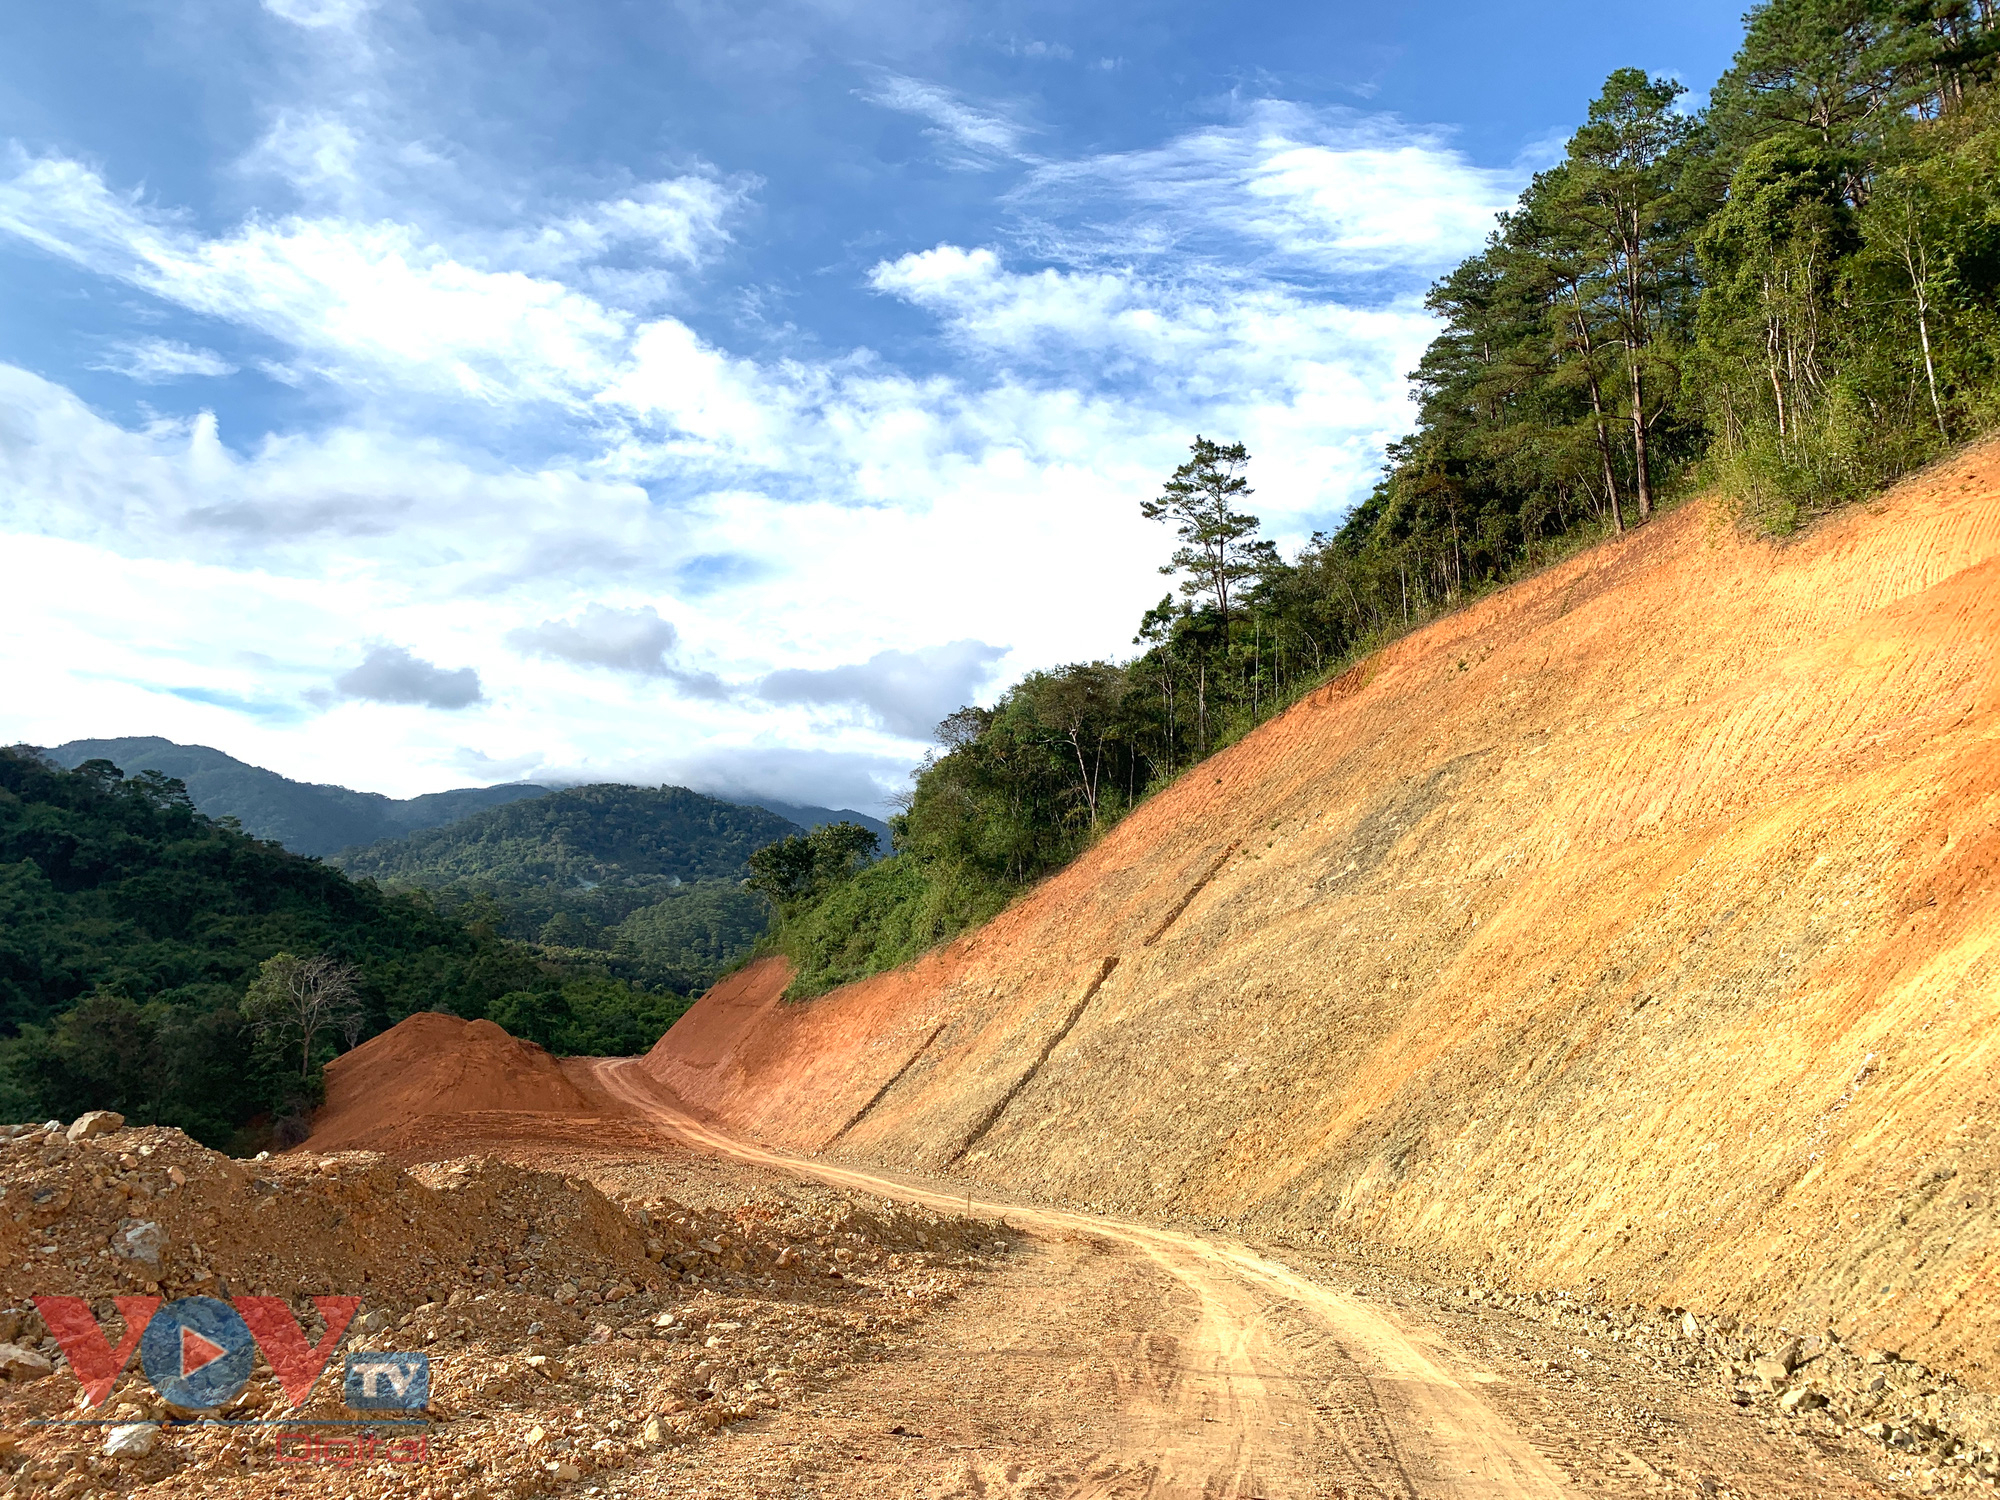 Cận cảnh rừng Quốc gia tại Đắk Lắk, Lâm Đồng bị phá để làm đường khi chưa được phép - Ảnh 2.